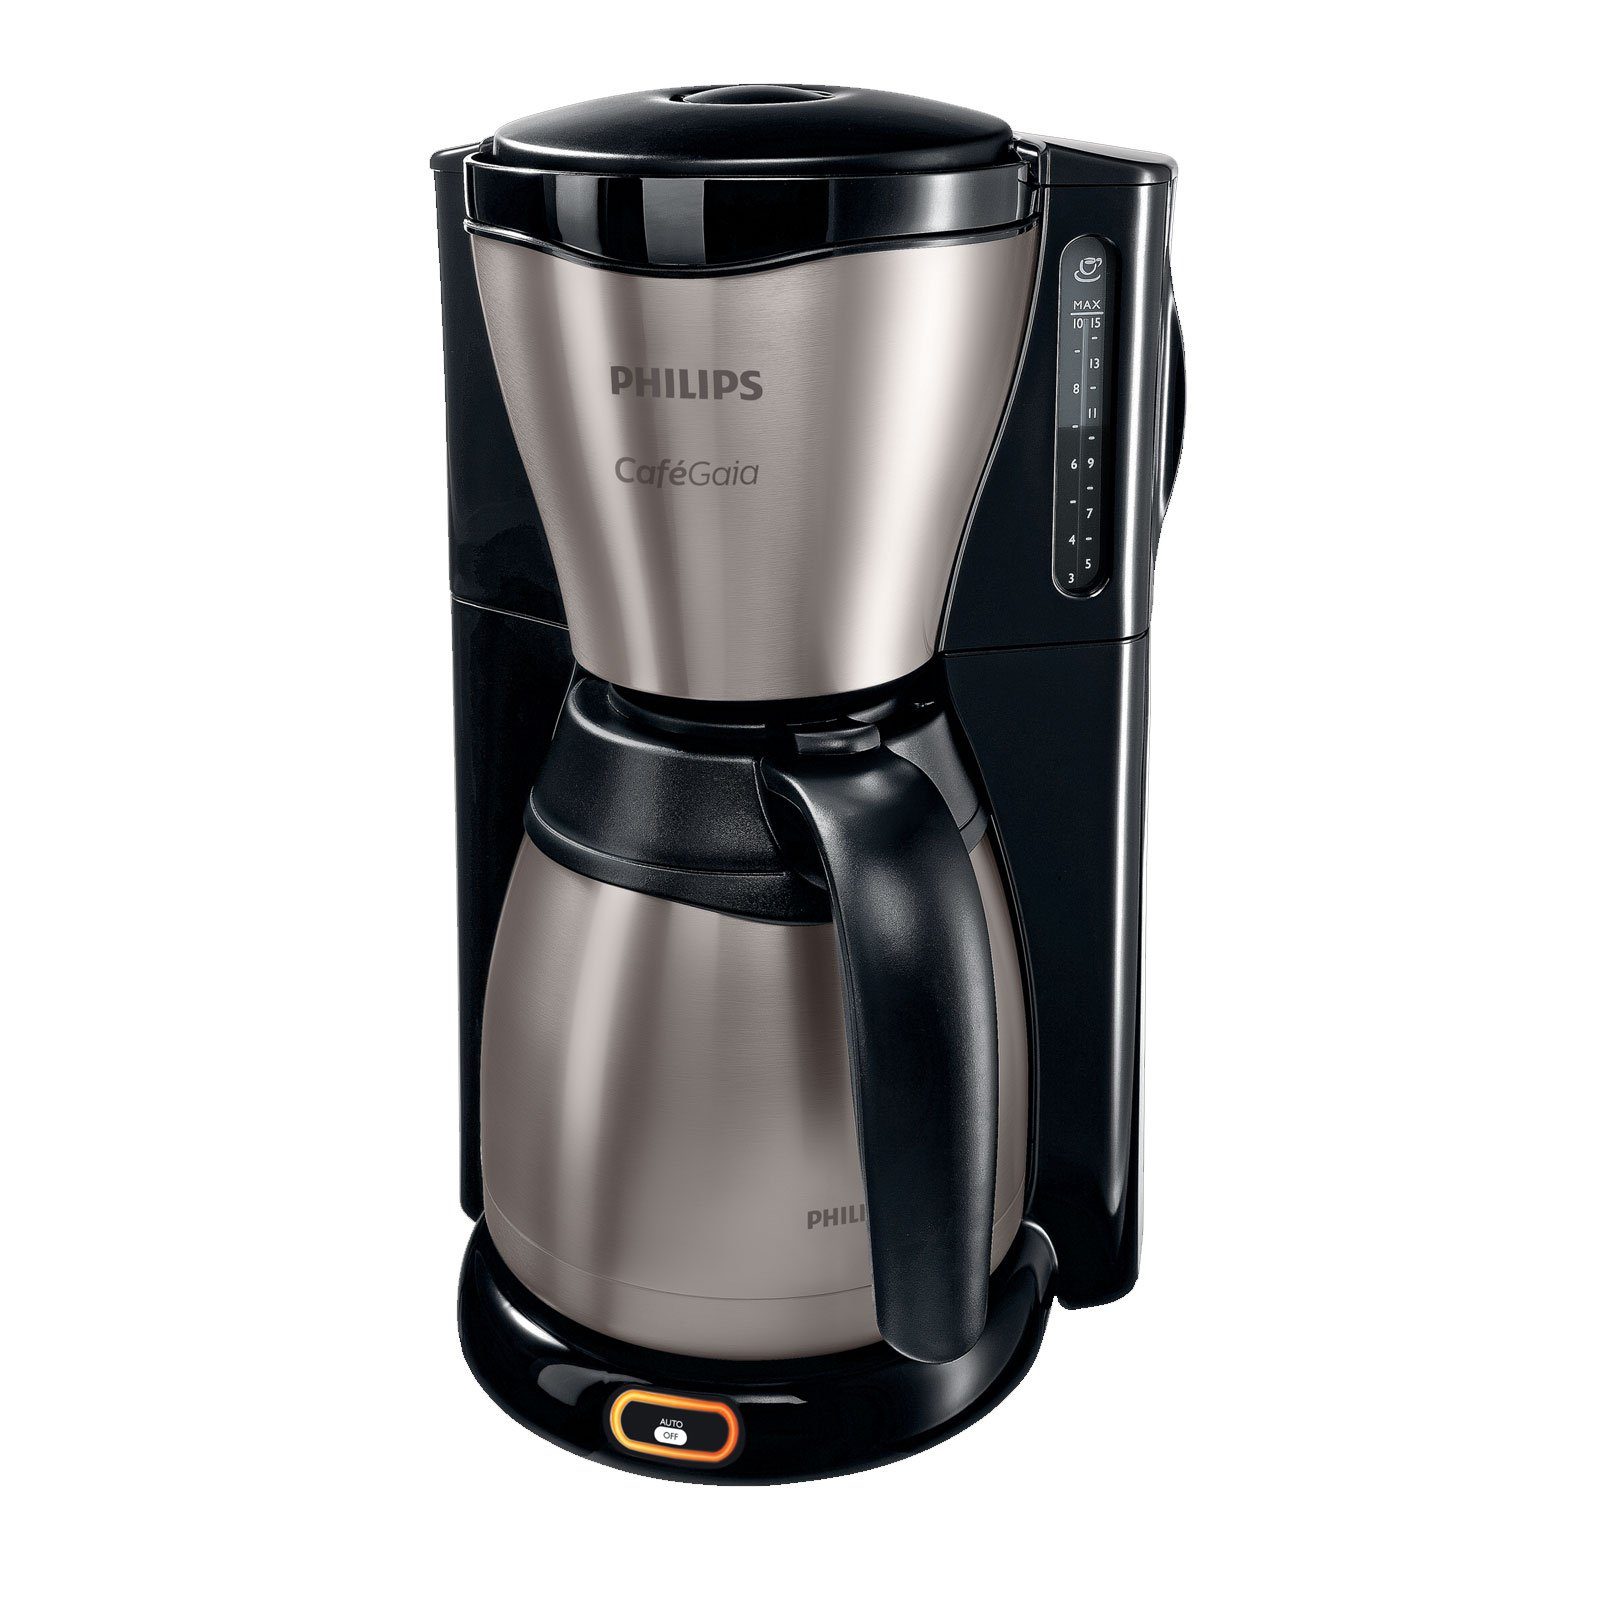 Philips Filterkaffeemaschine HD7548 Café Gaia, 1,2l Kaffeekanne, Thermokanne,  15 Tassen, Tropf-Stopp-Funktion, Abschalt-Automatik, Wasserstandsanzeige  für einfaches Auffüllen